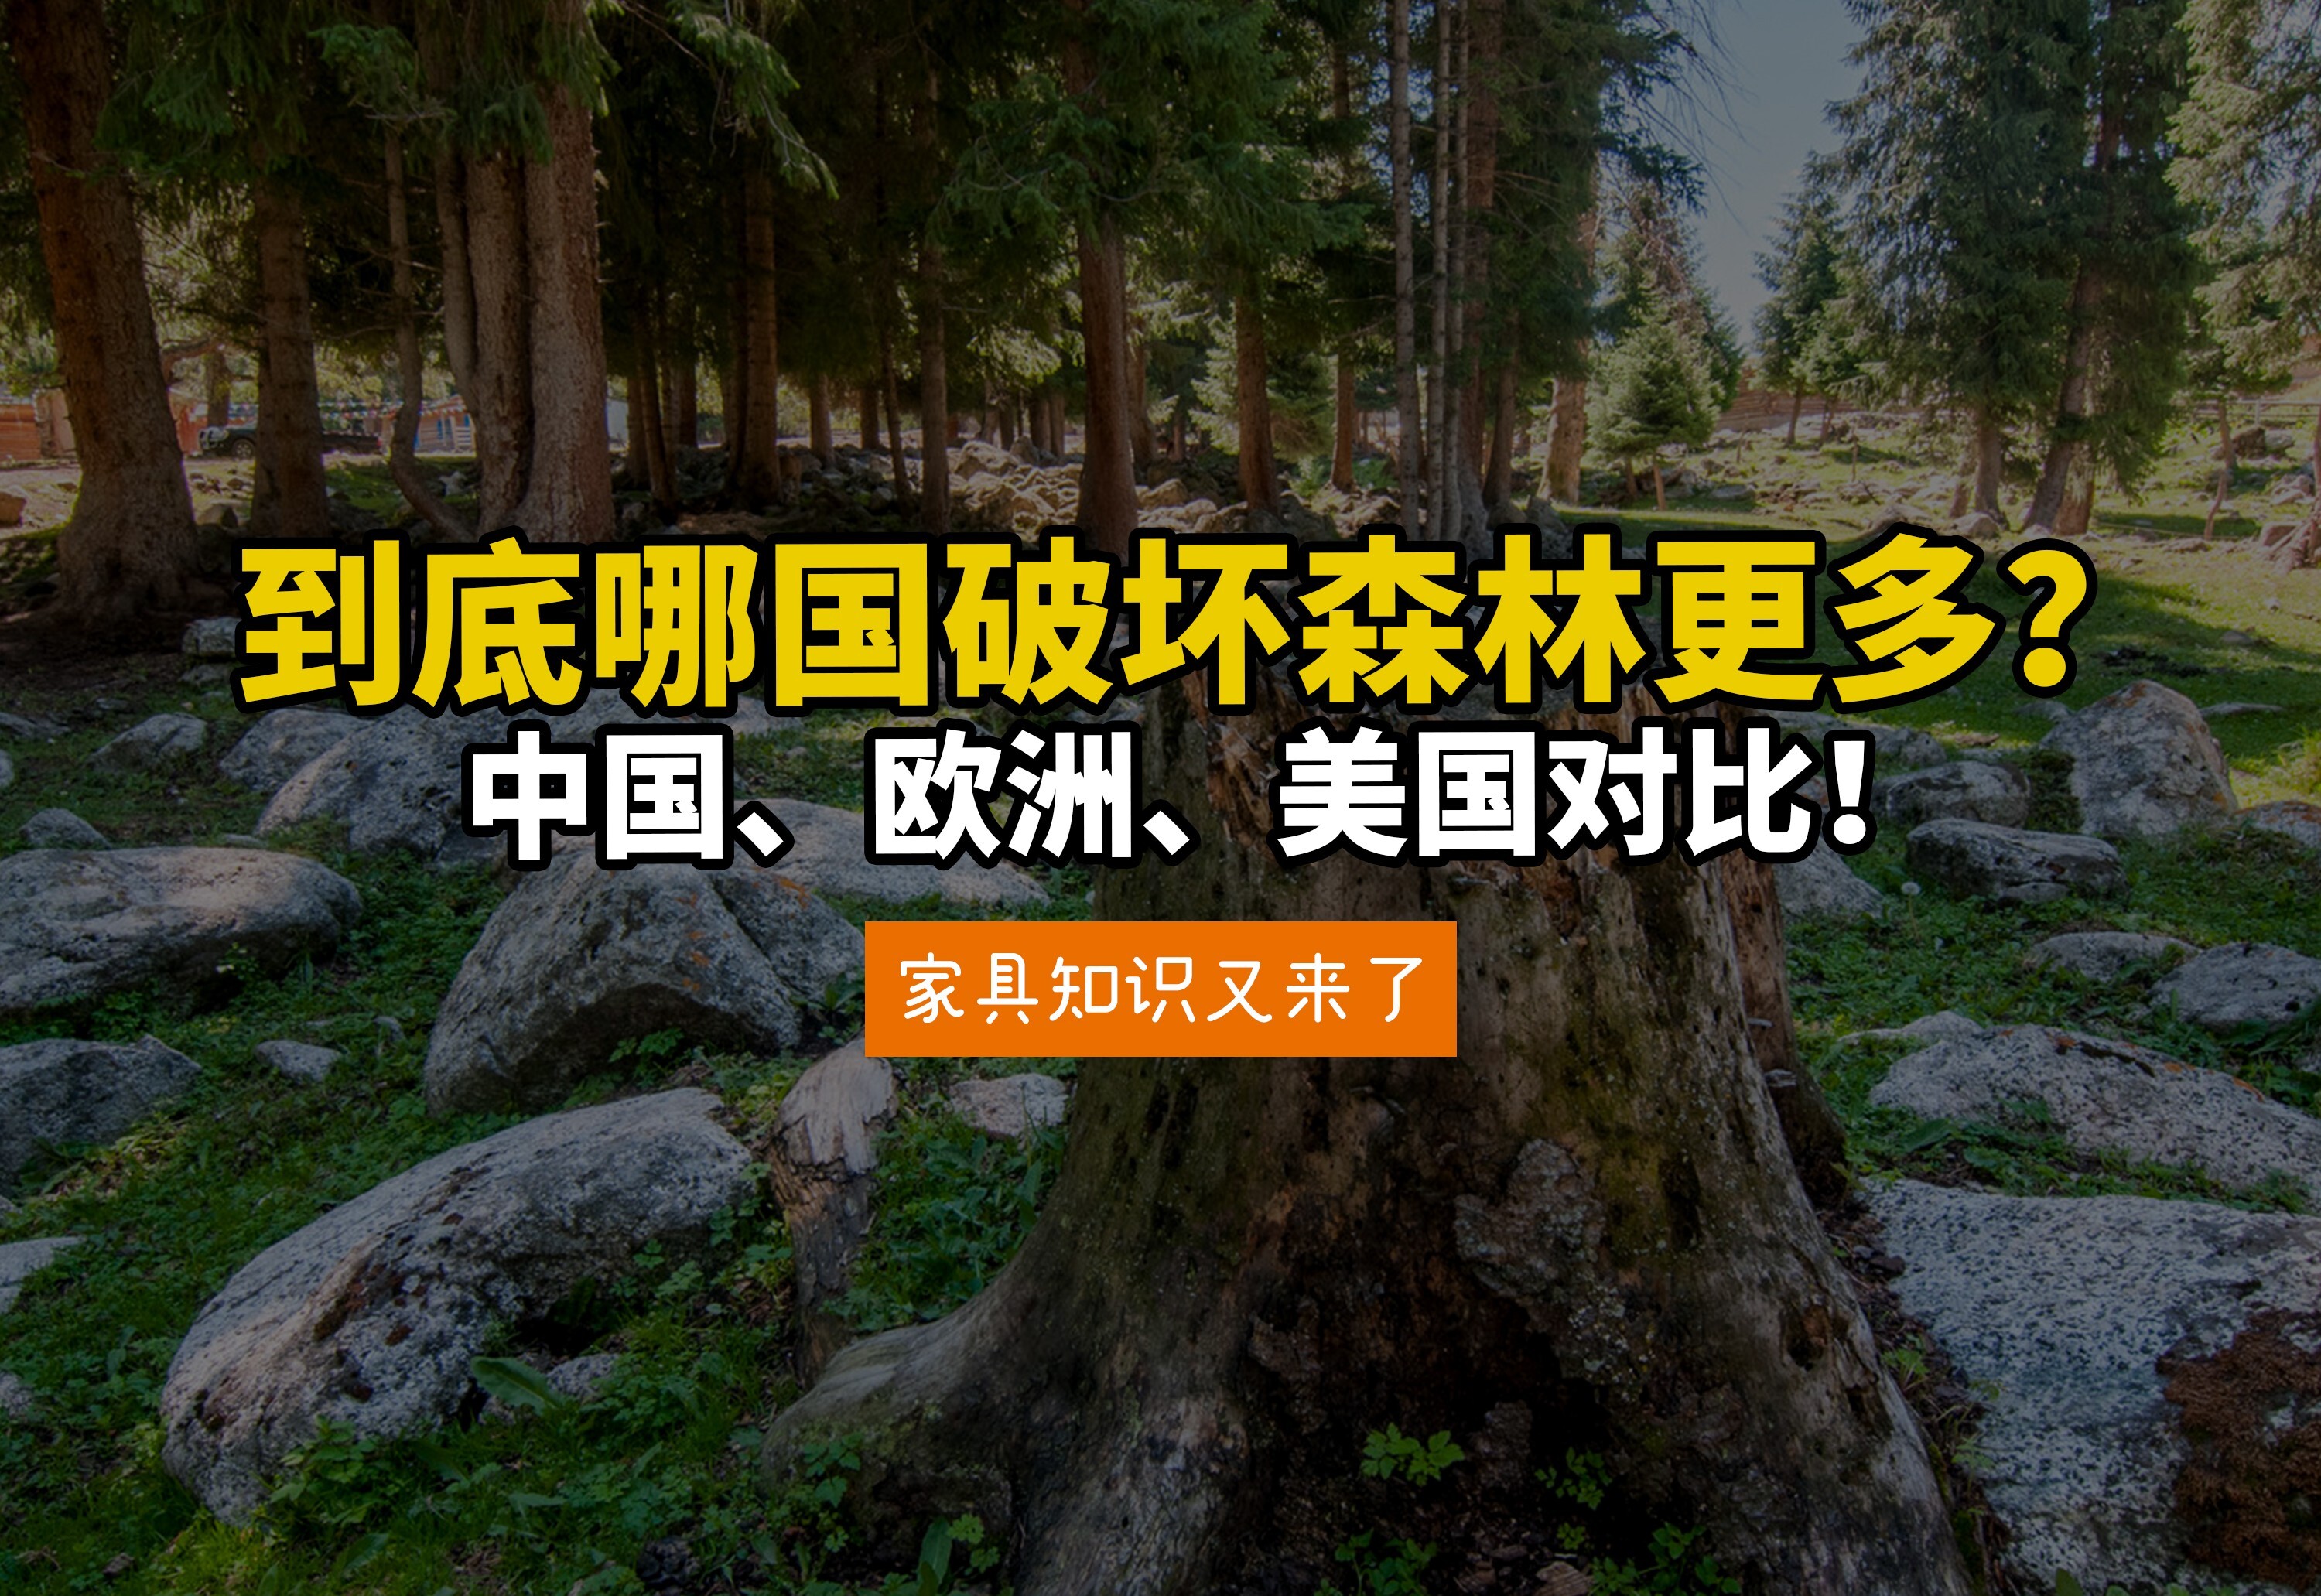 中国破坏森林？到底谁在消灭世界森林？美国欧洲中国木材消耗对比